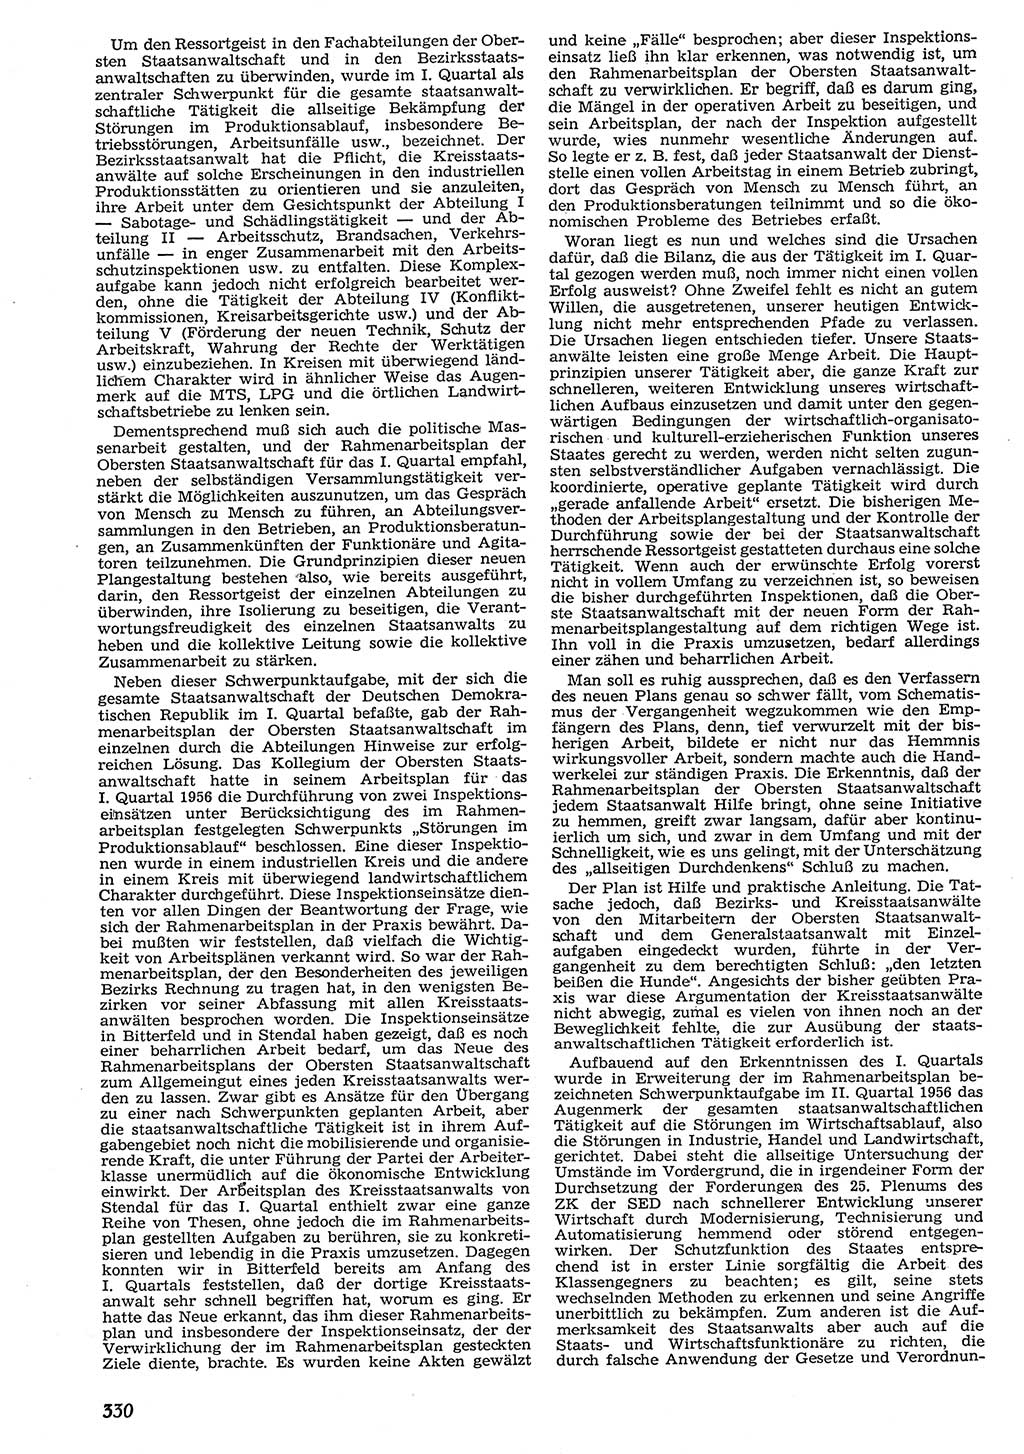 Neue Justiz (NJ), Zeitschrift für Recht und Rechtswissenschaft [Deutsche Demokratische Republik (DDR)], 10. Jahrgang 1956, Seite 330 (NJ DDR 1956, S. 330)